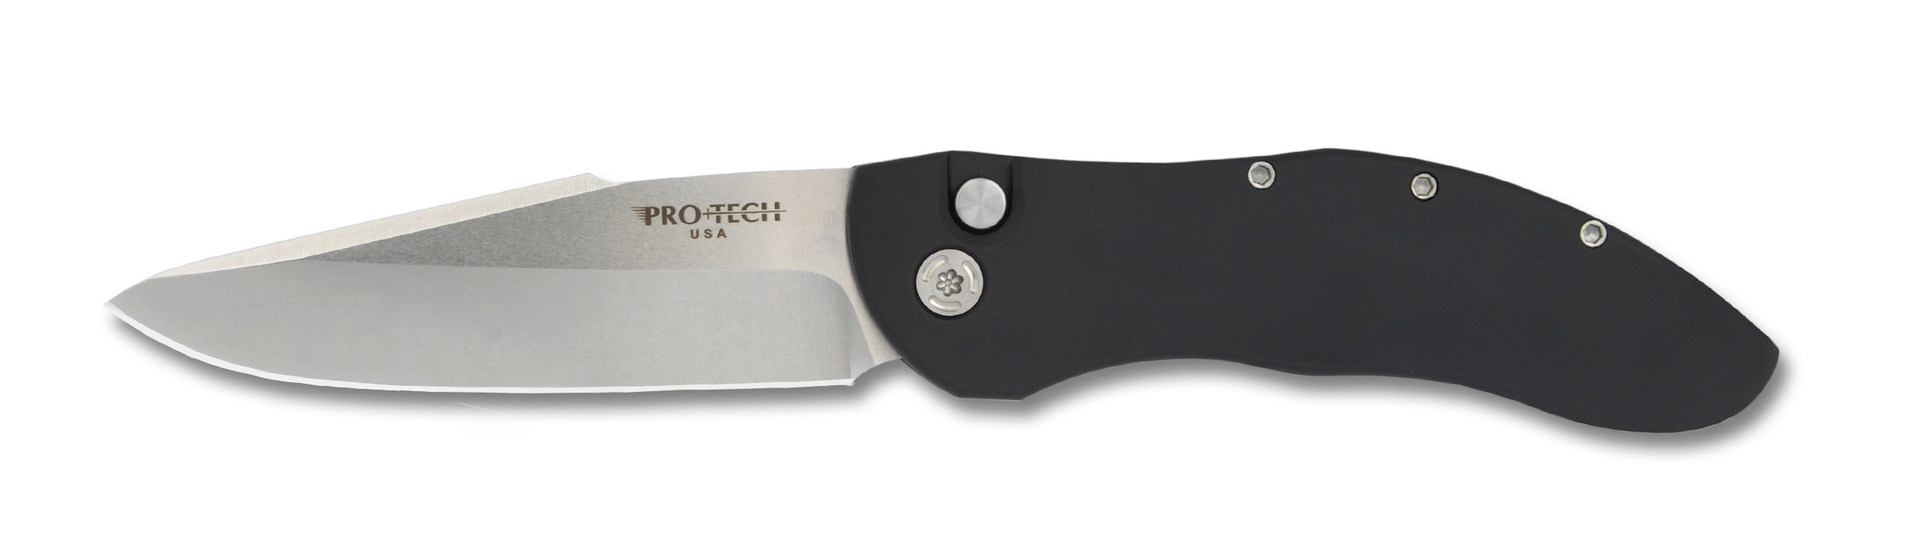 Нож Pro-Tech Doru складной сталь 154CM рукоять алюминий